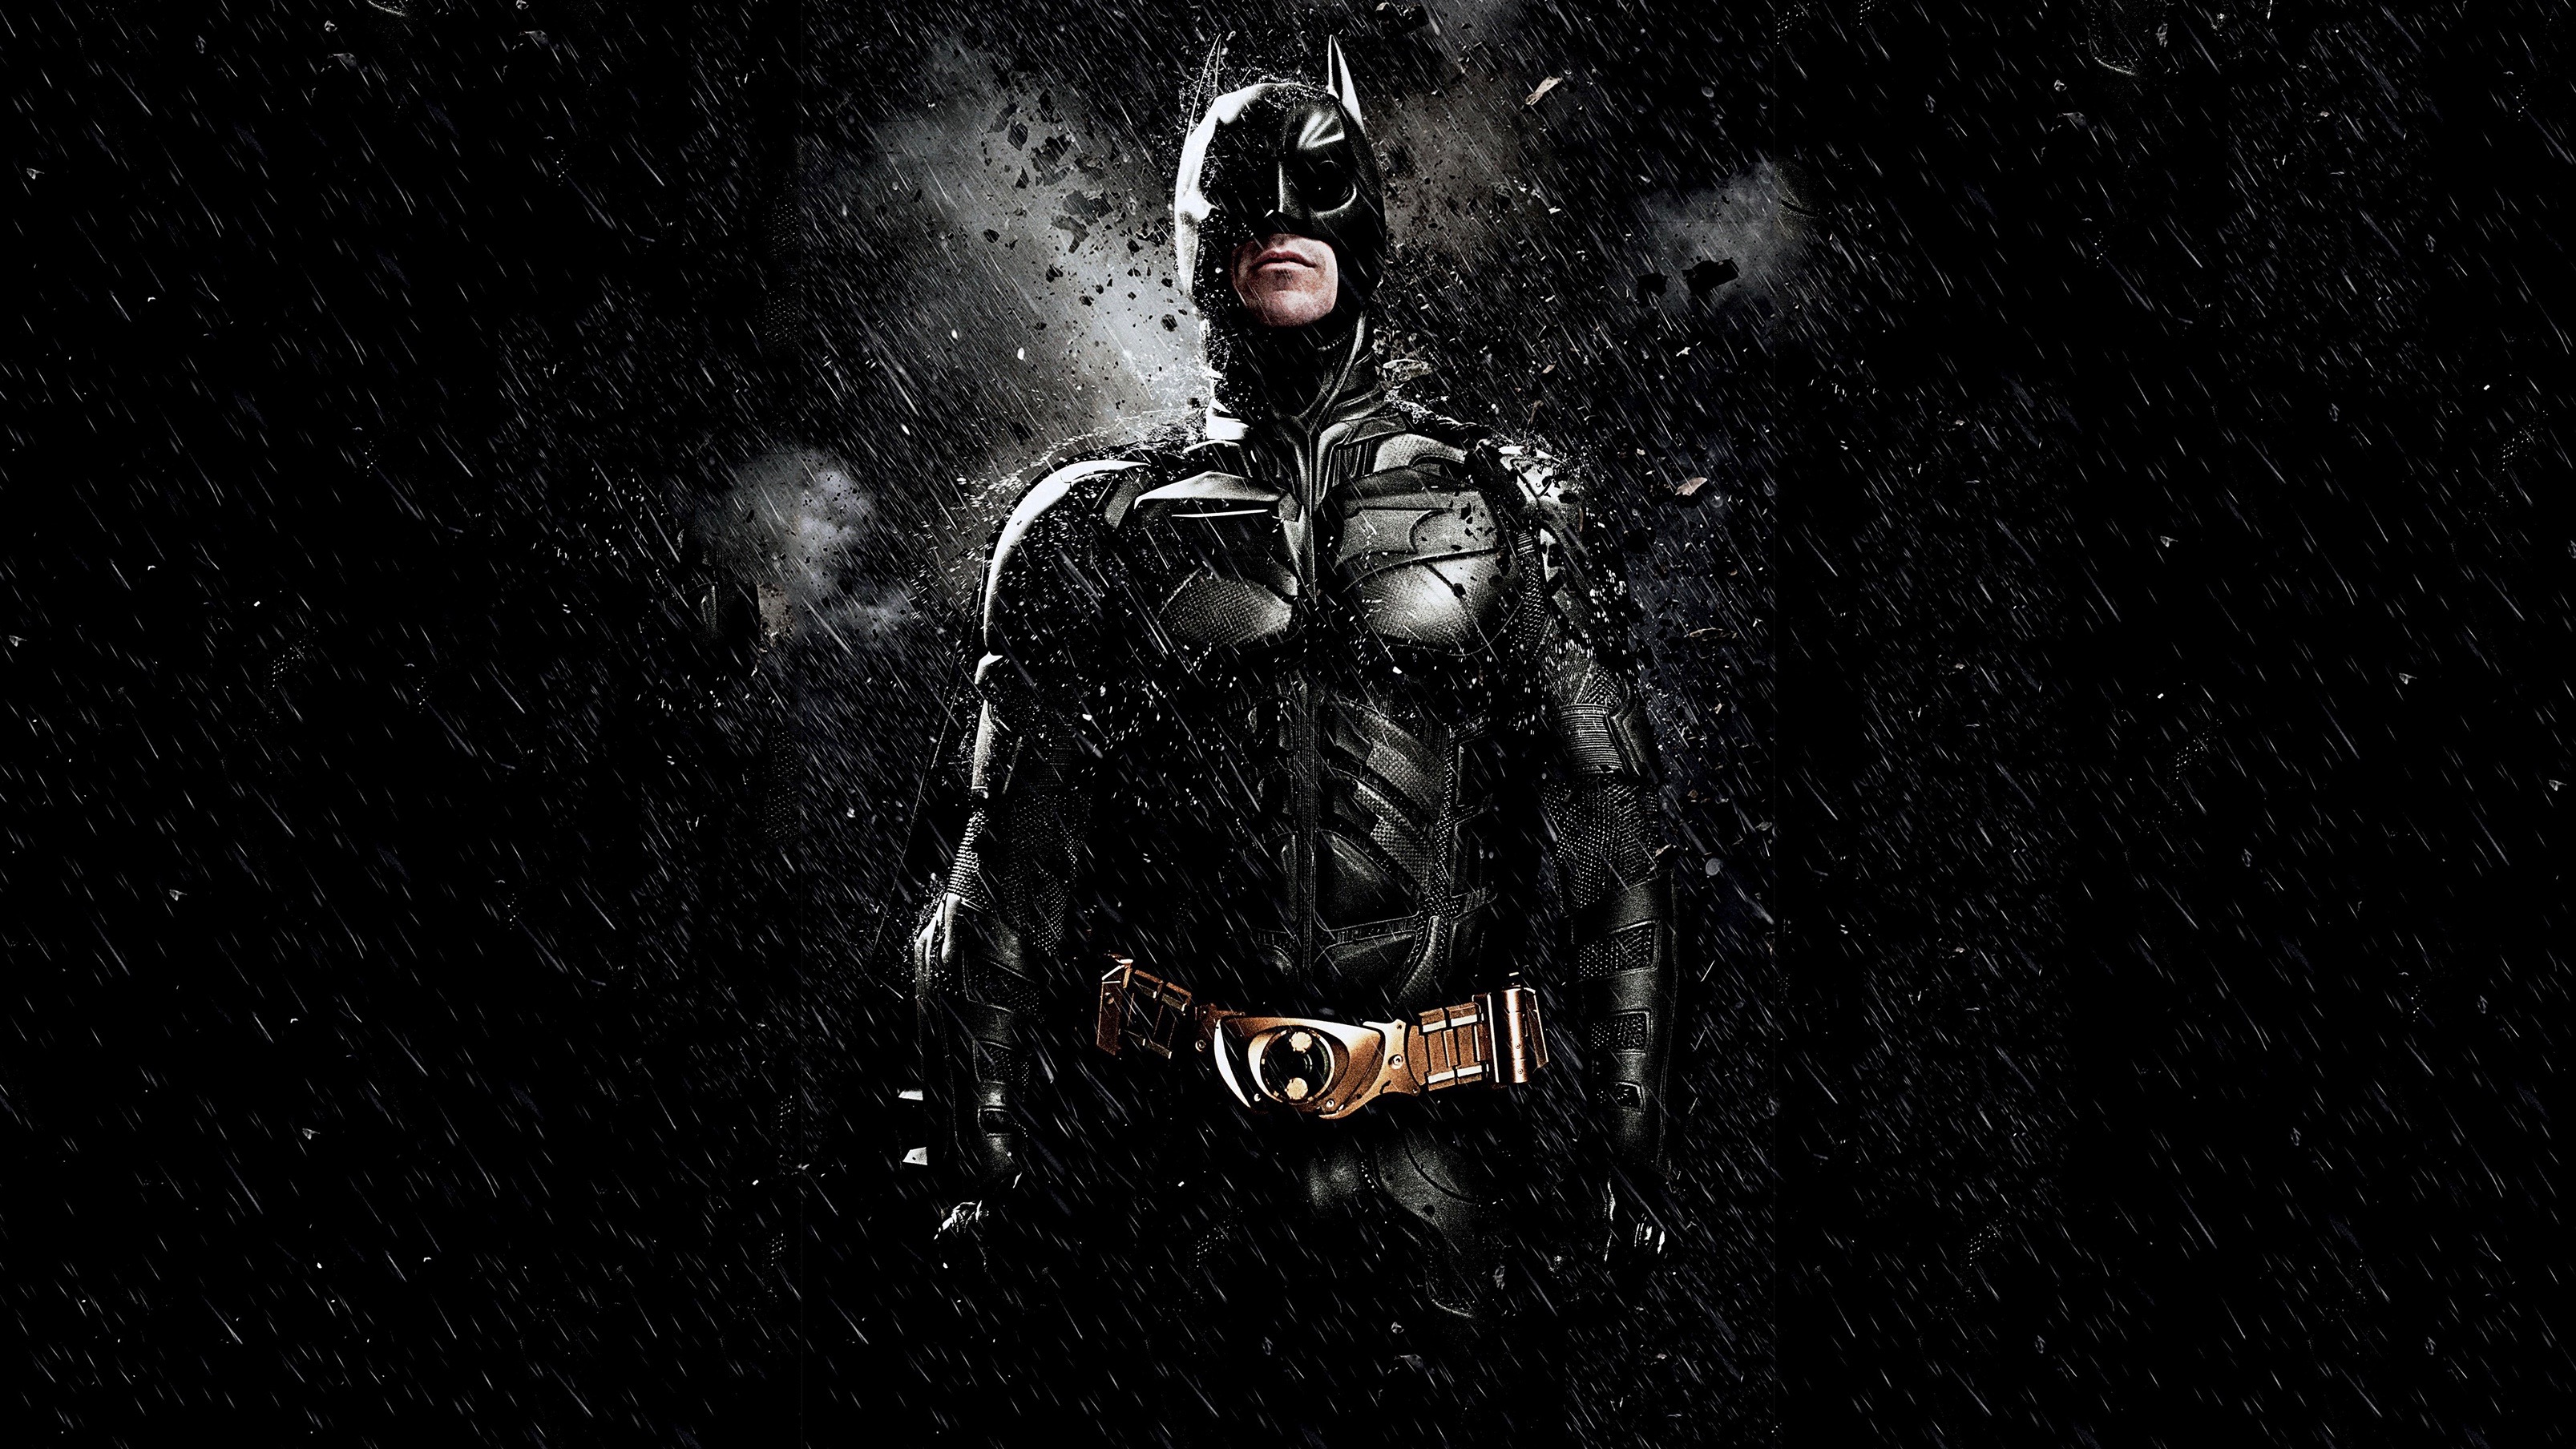 Batman Bruce Wayne Christian Bale The Dark Knight Rises 3214x1808